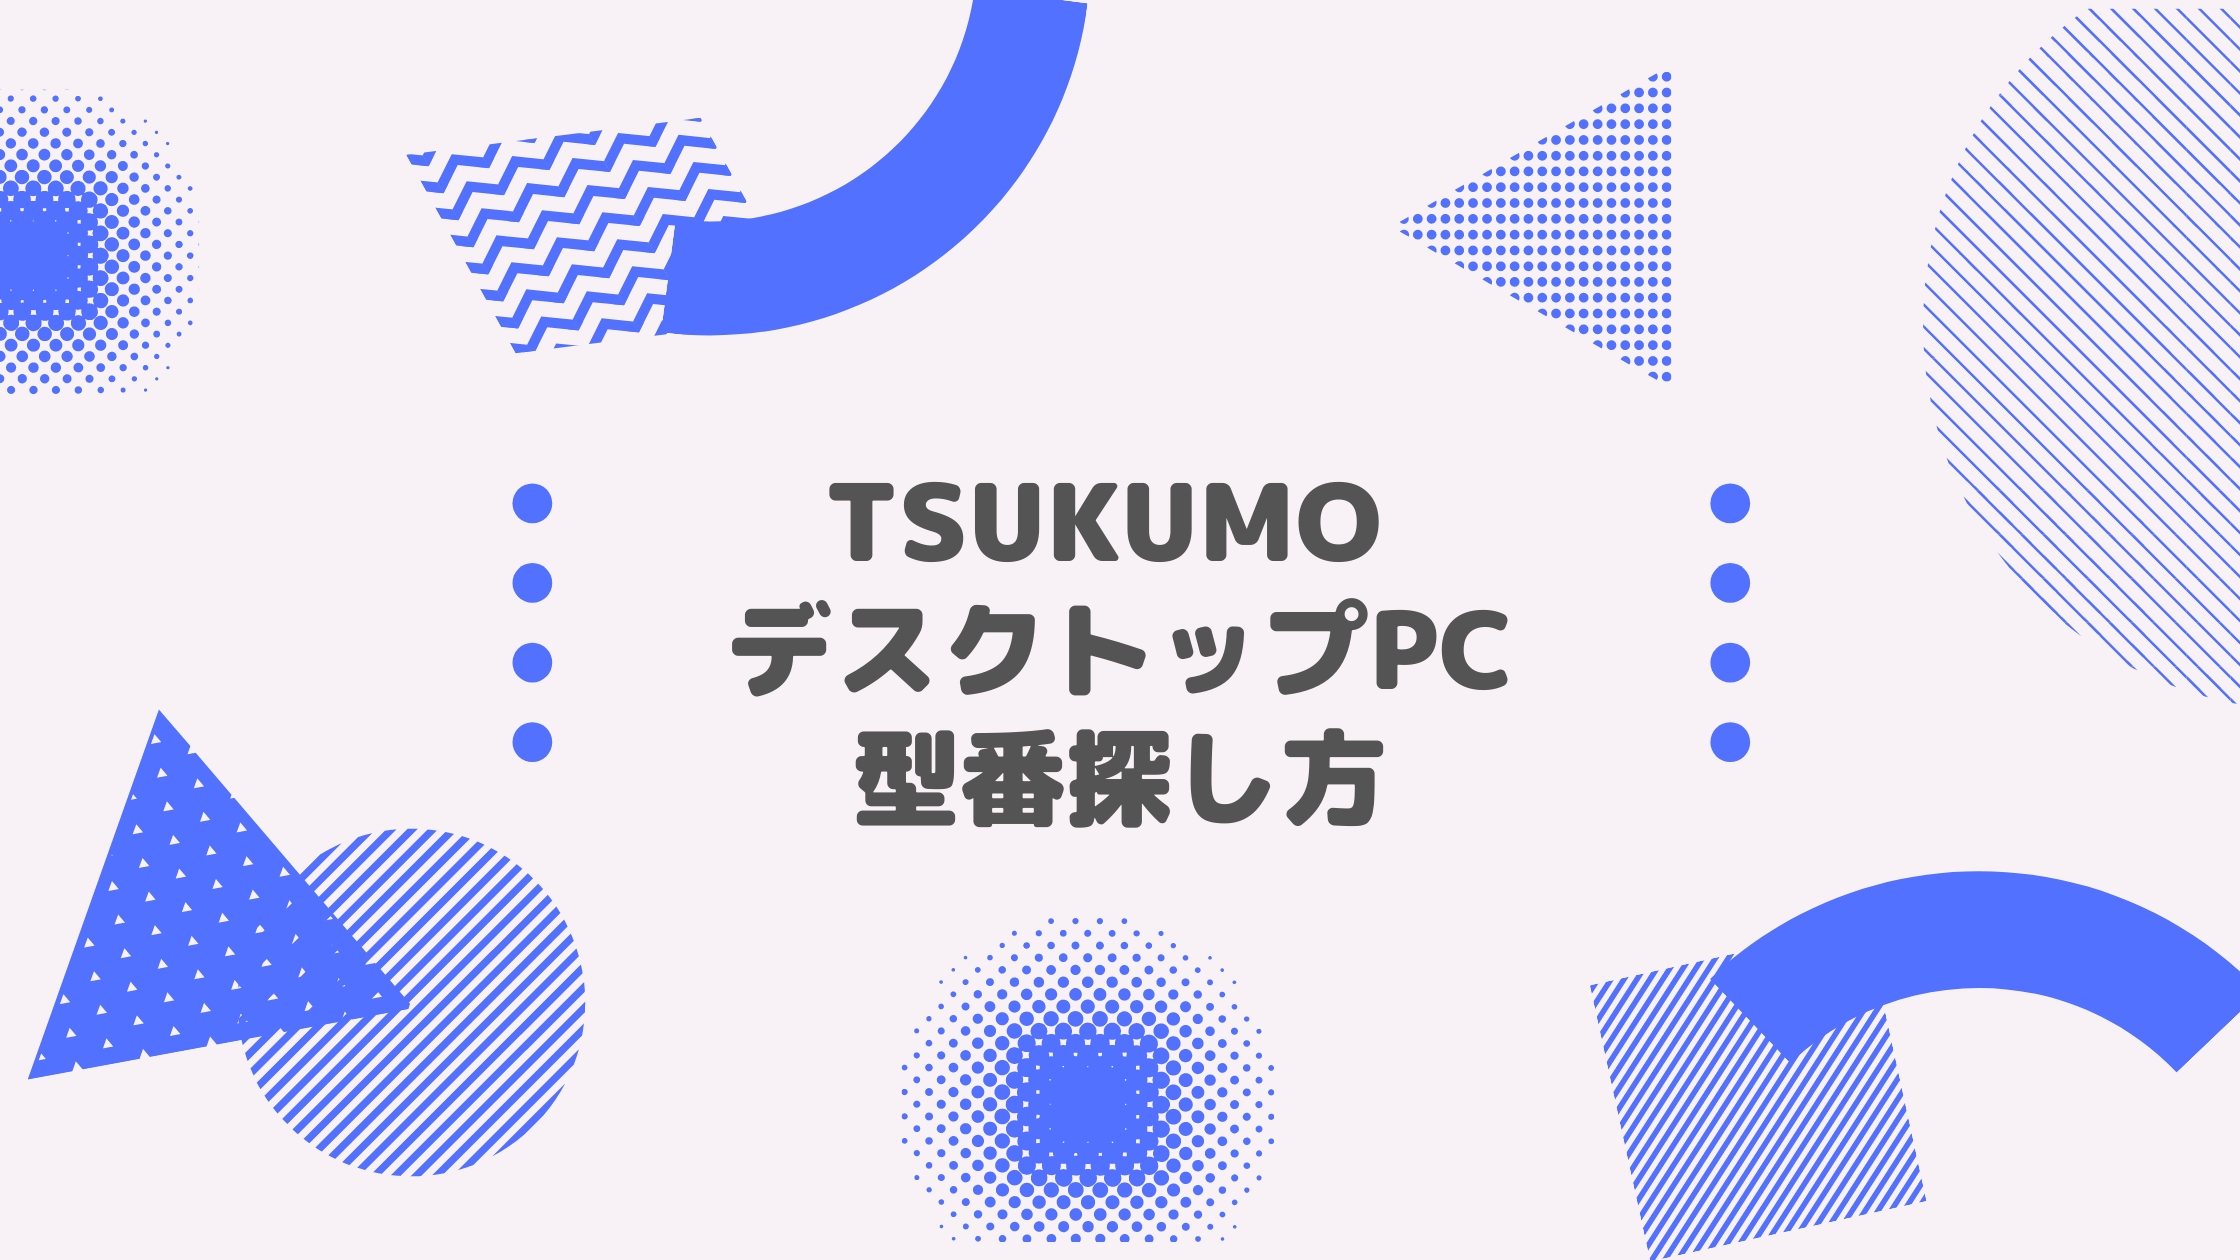 TSUKUMO(ツクモ)_デスクトップPC_型番探し方